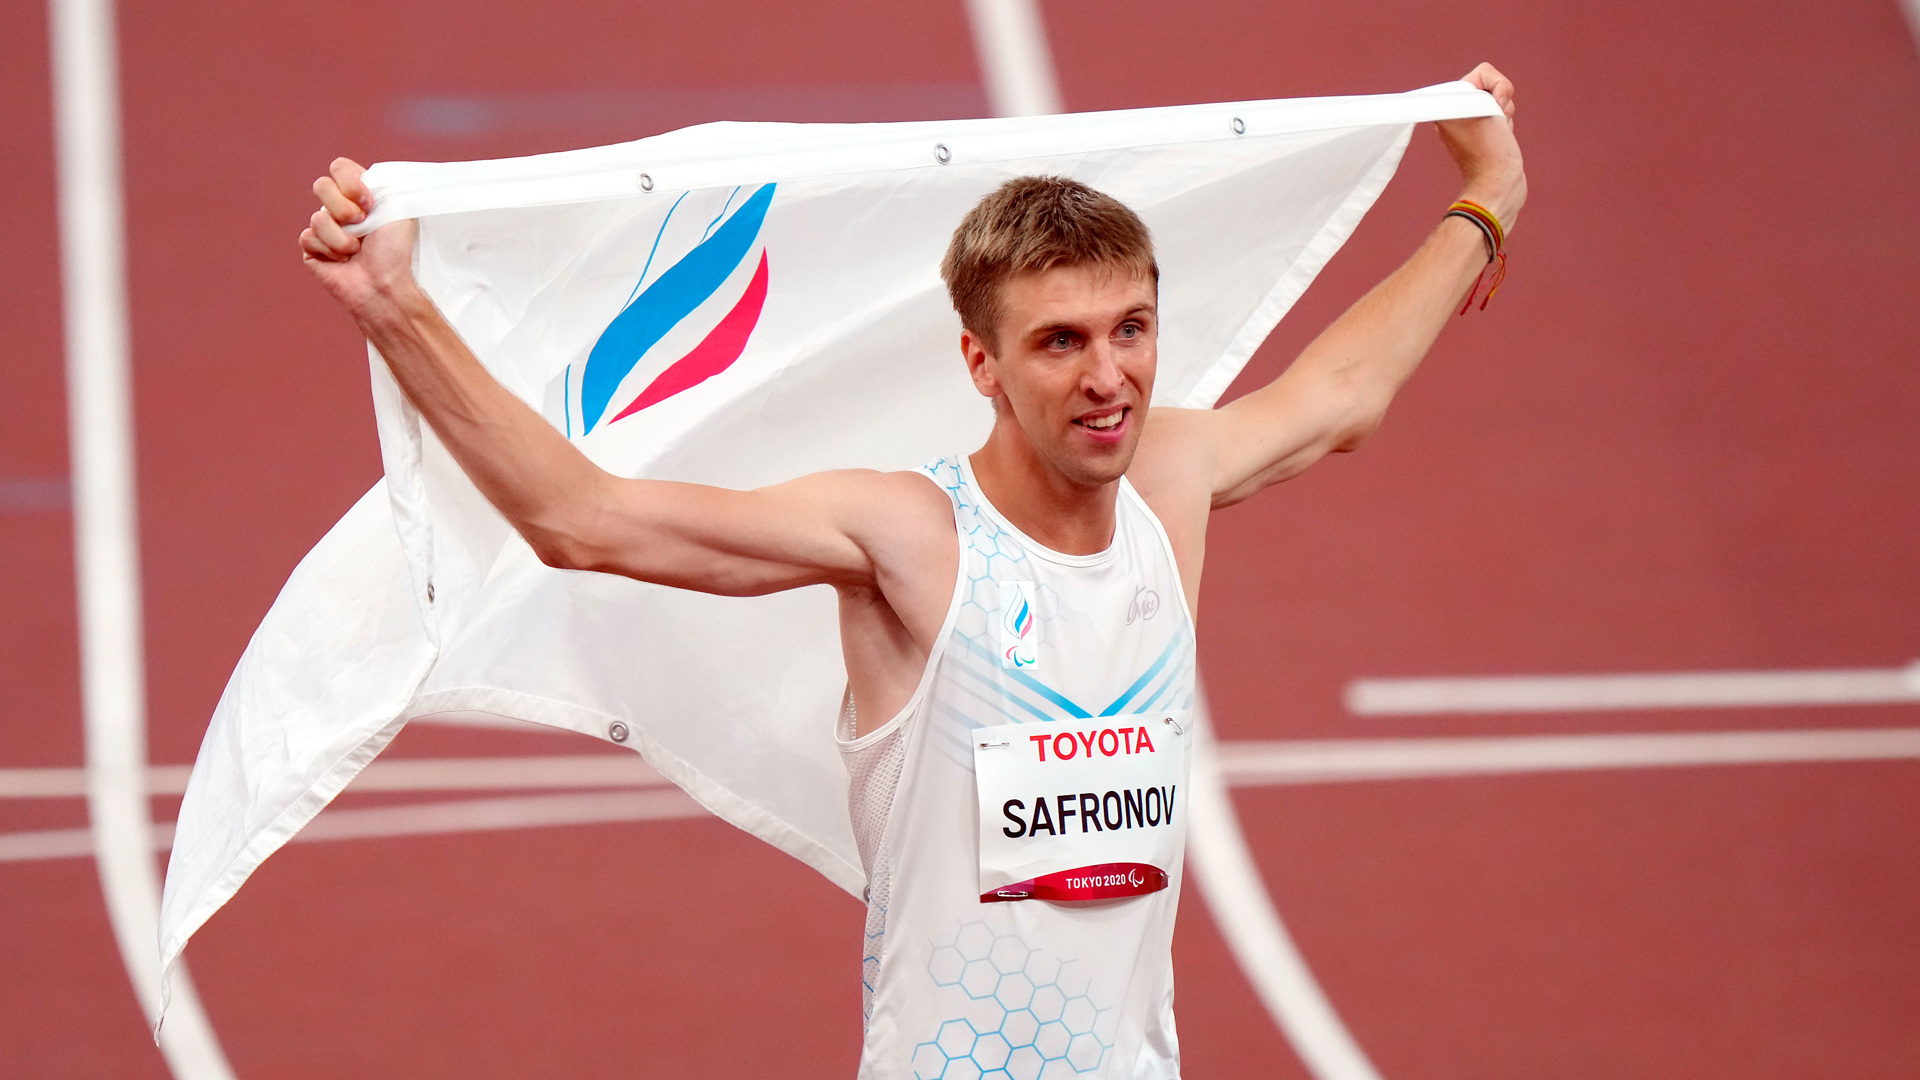 Сафронов Дмитрий паралимпиец медали